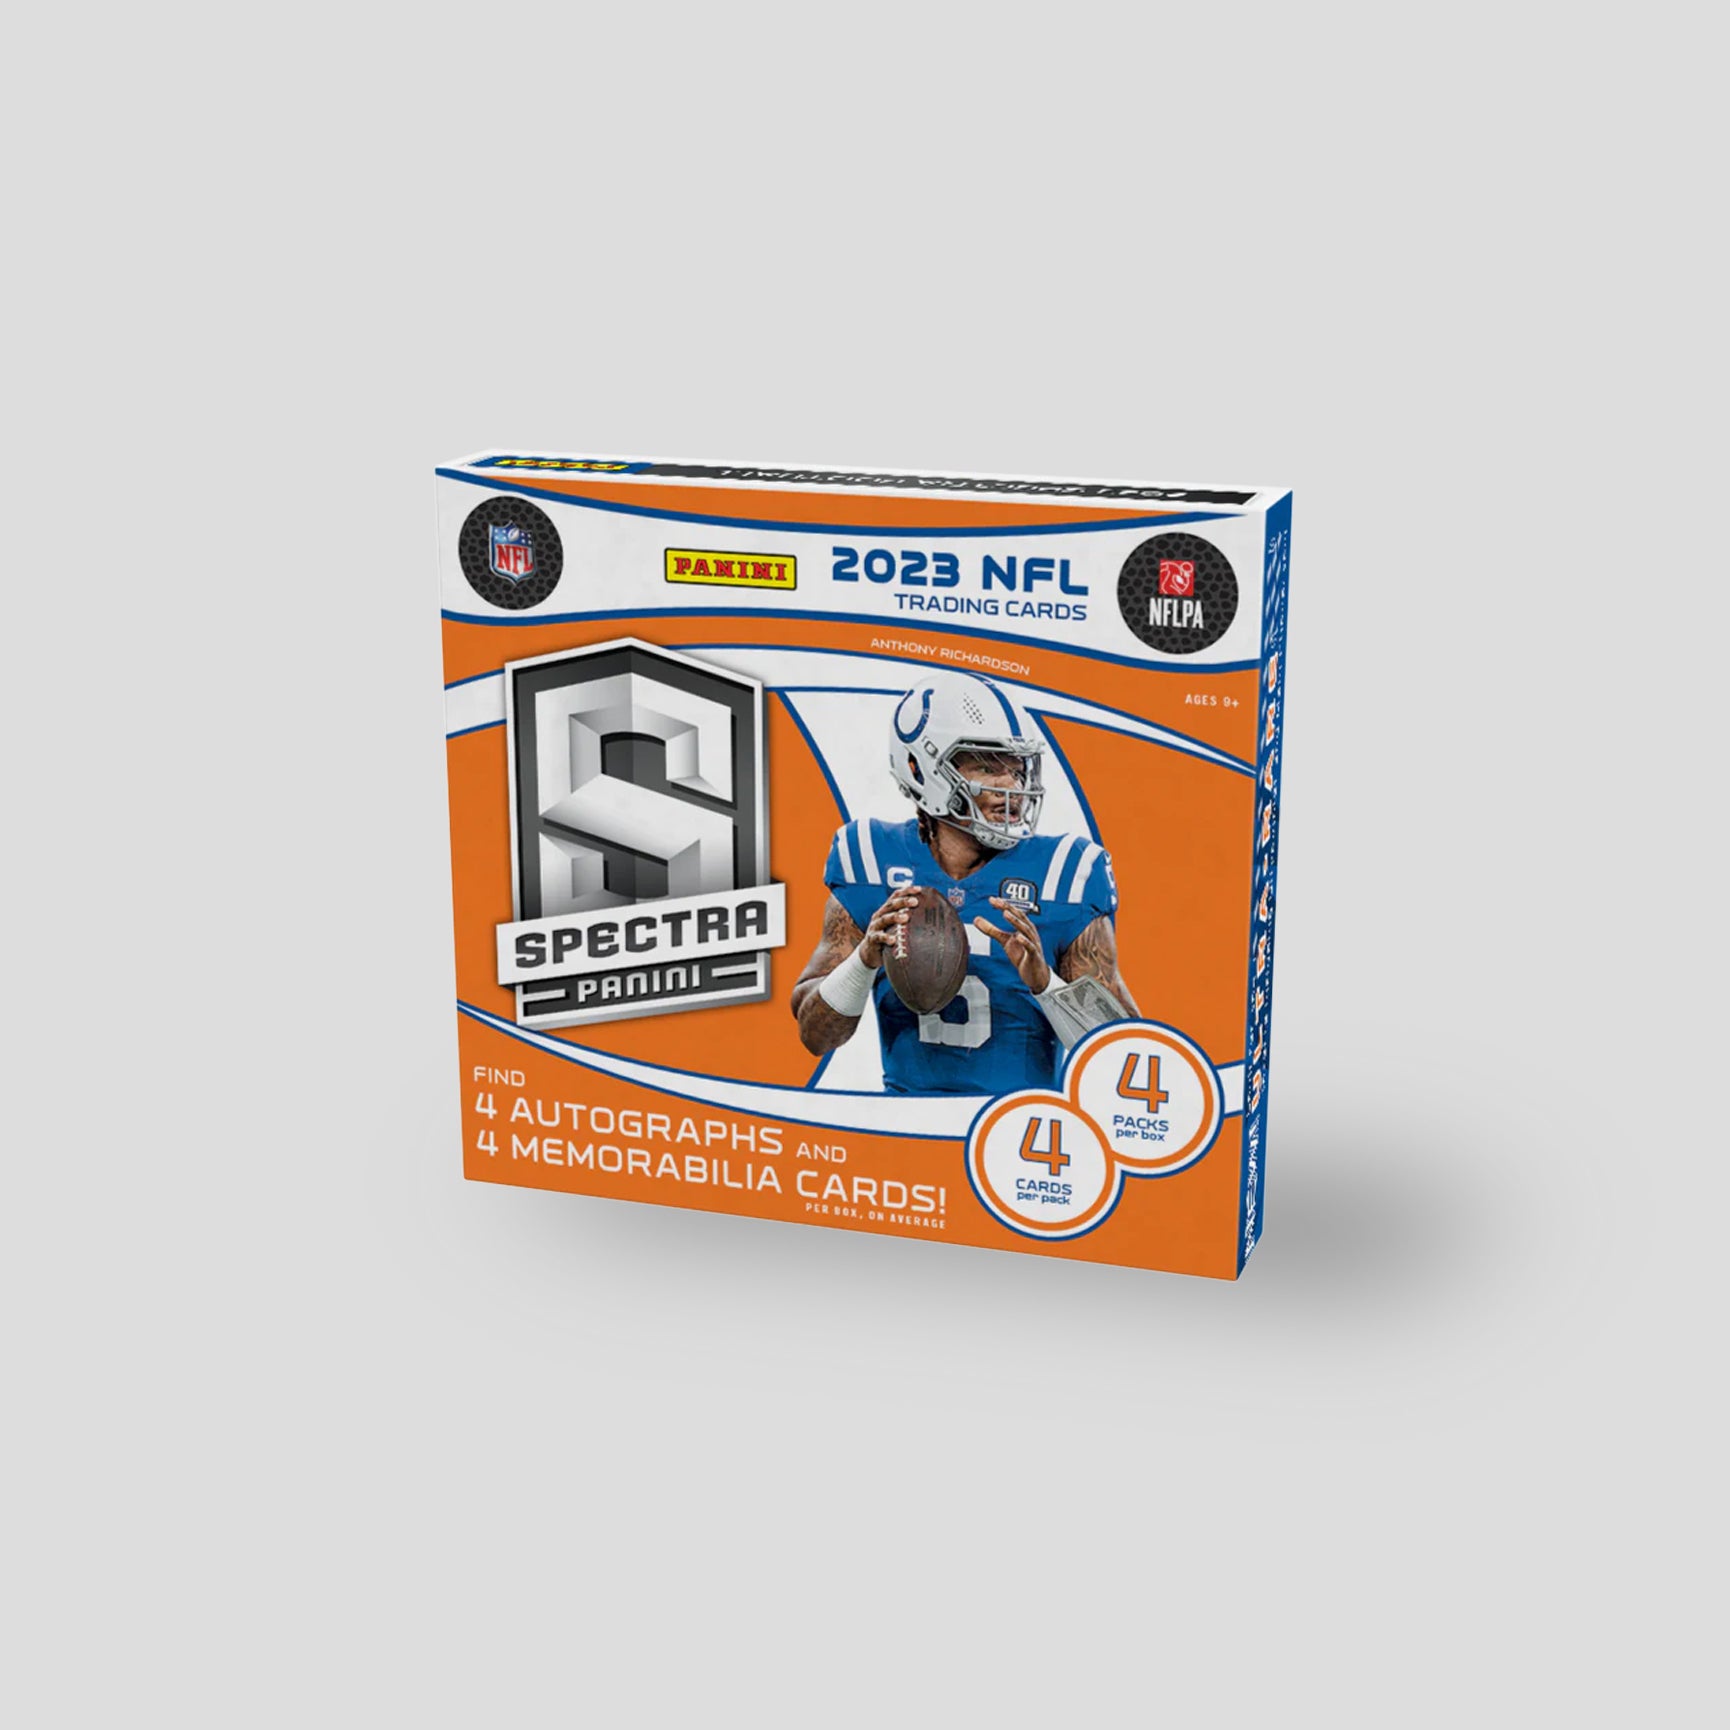 2023 Panini Spectra Football Hobby Box